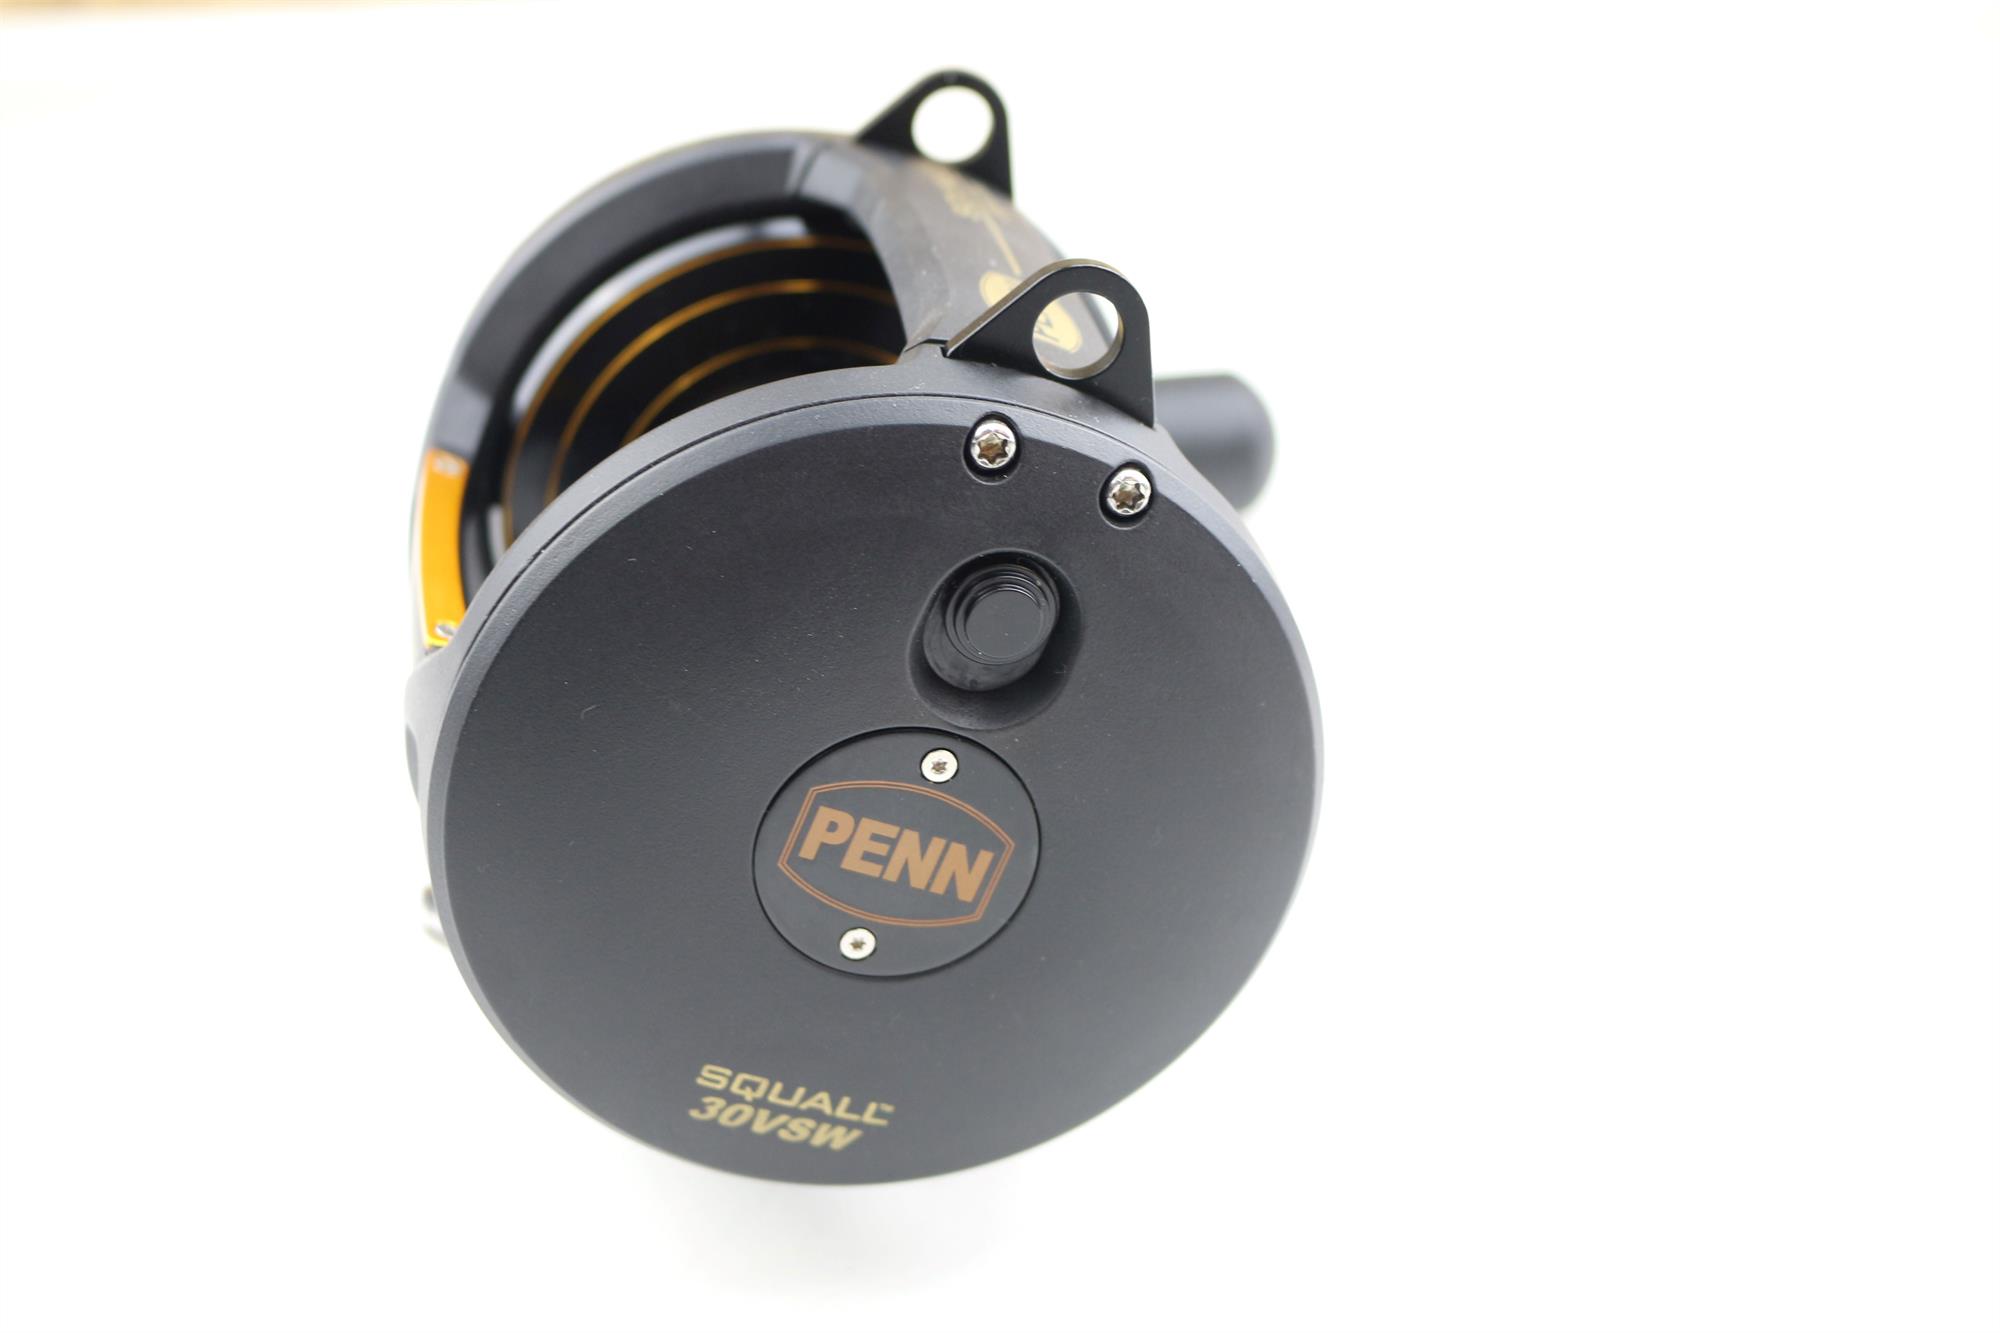 Penn Squall Lever 30 VSW Drag 2 Speed